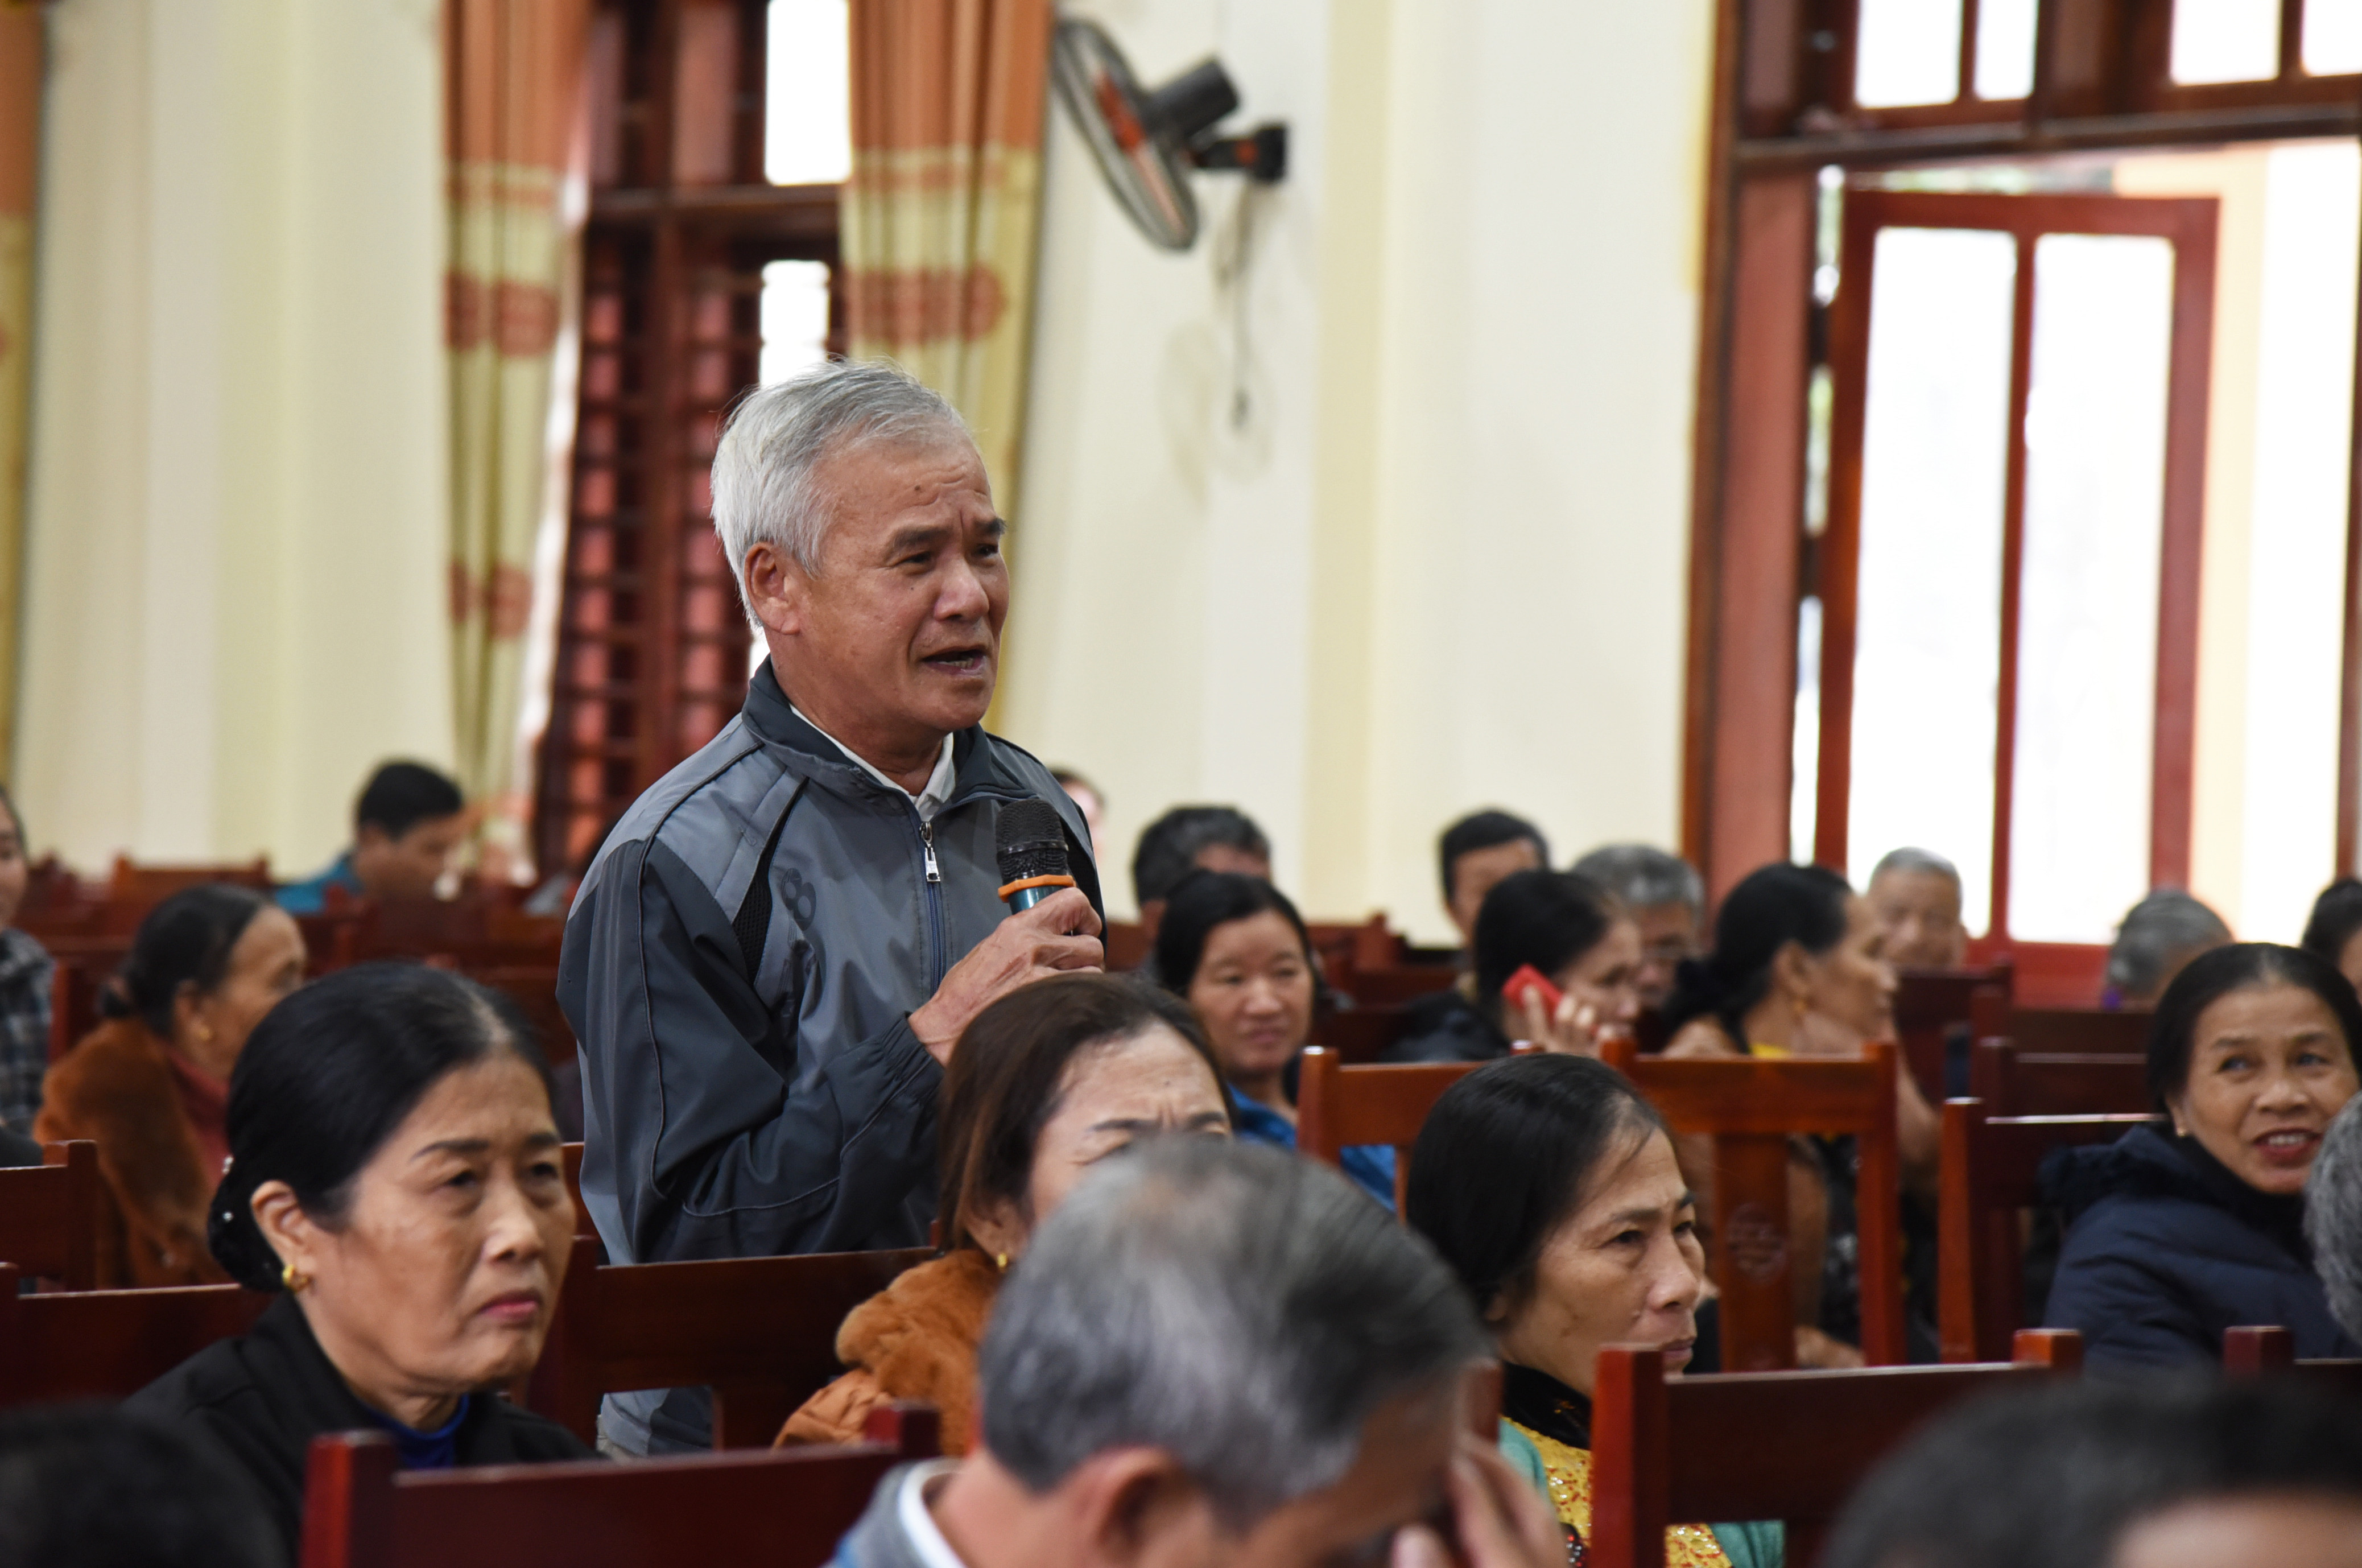 Cử tri xã Nghi Trung bày tỏ đánh giá cao kết quả kỳ họp vừa qua của Quốc hội, đồng thời lên tiếng về nhiều vấn đề còn băn khoăn. Ảnh: Thu Giang